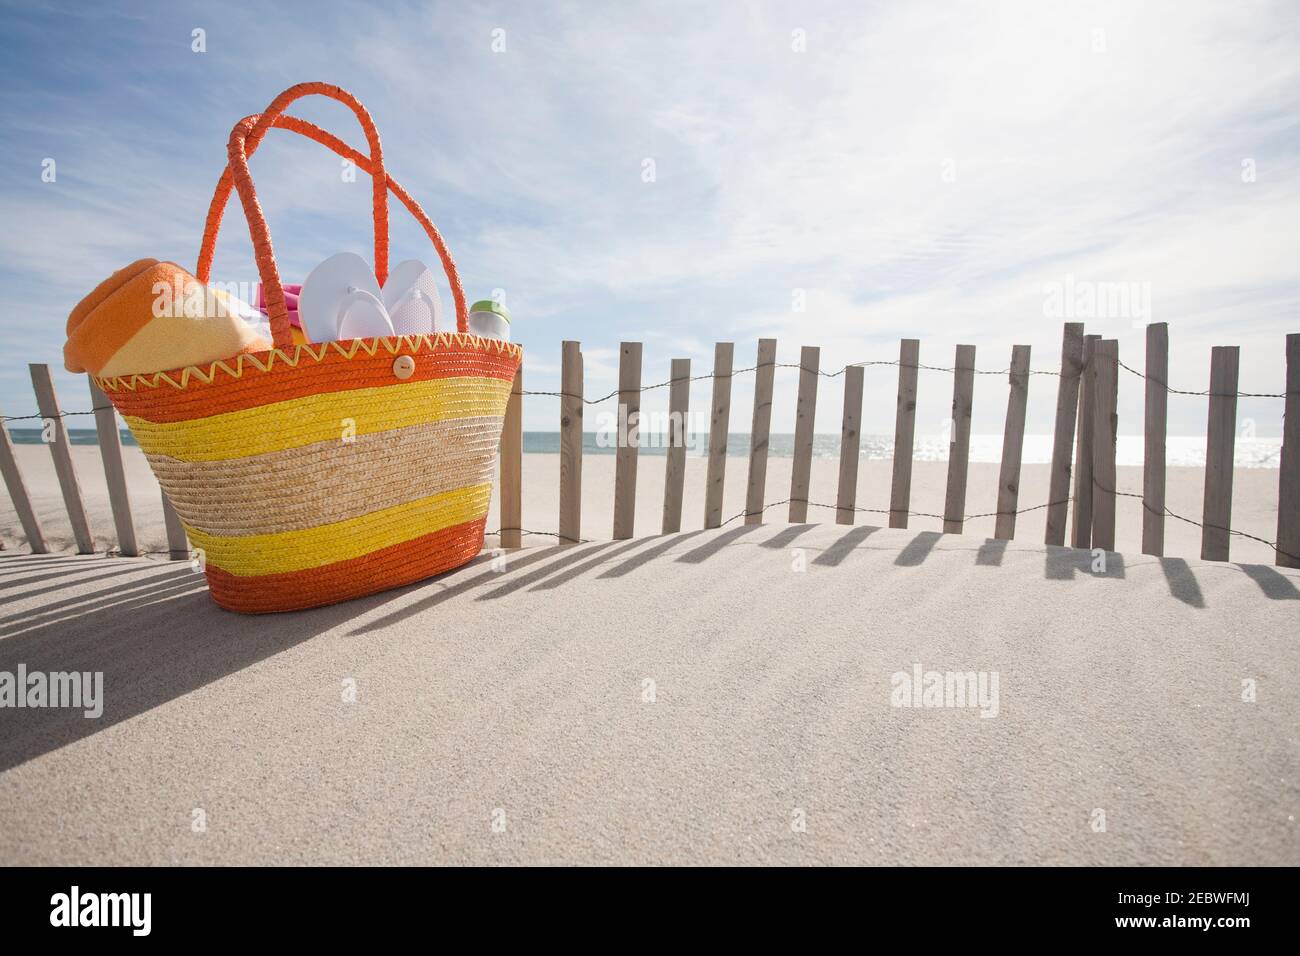 Beach bag with flip-flops on beach Stock Photo